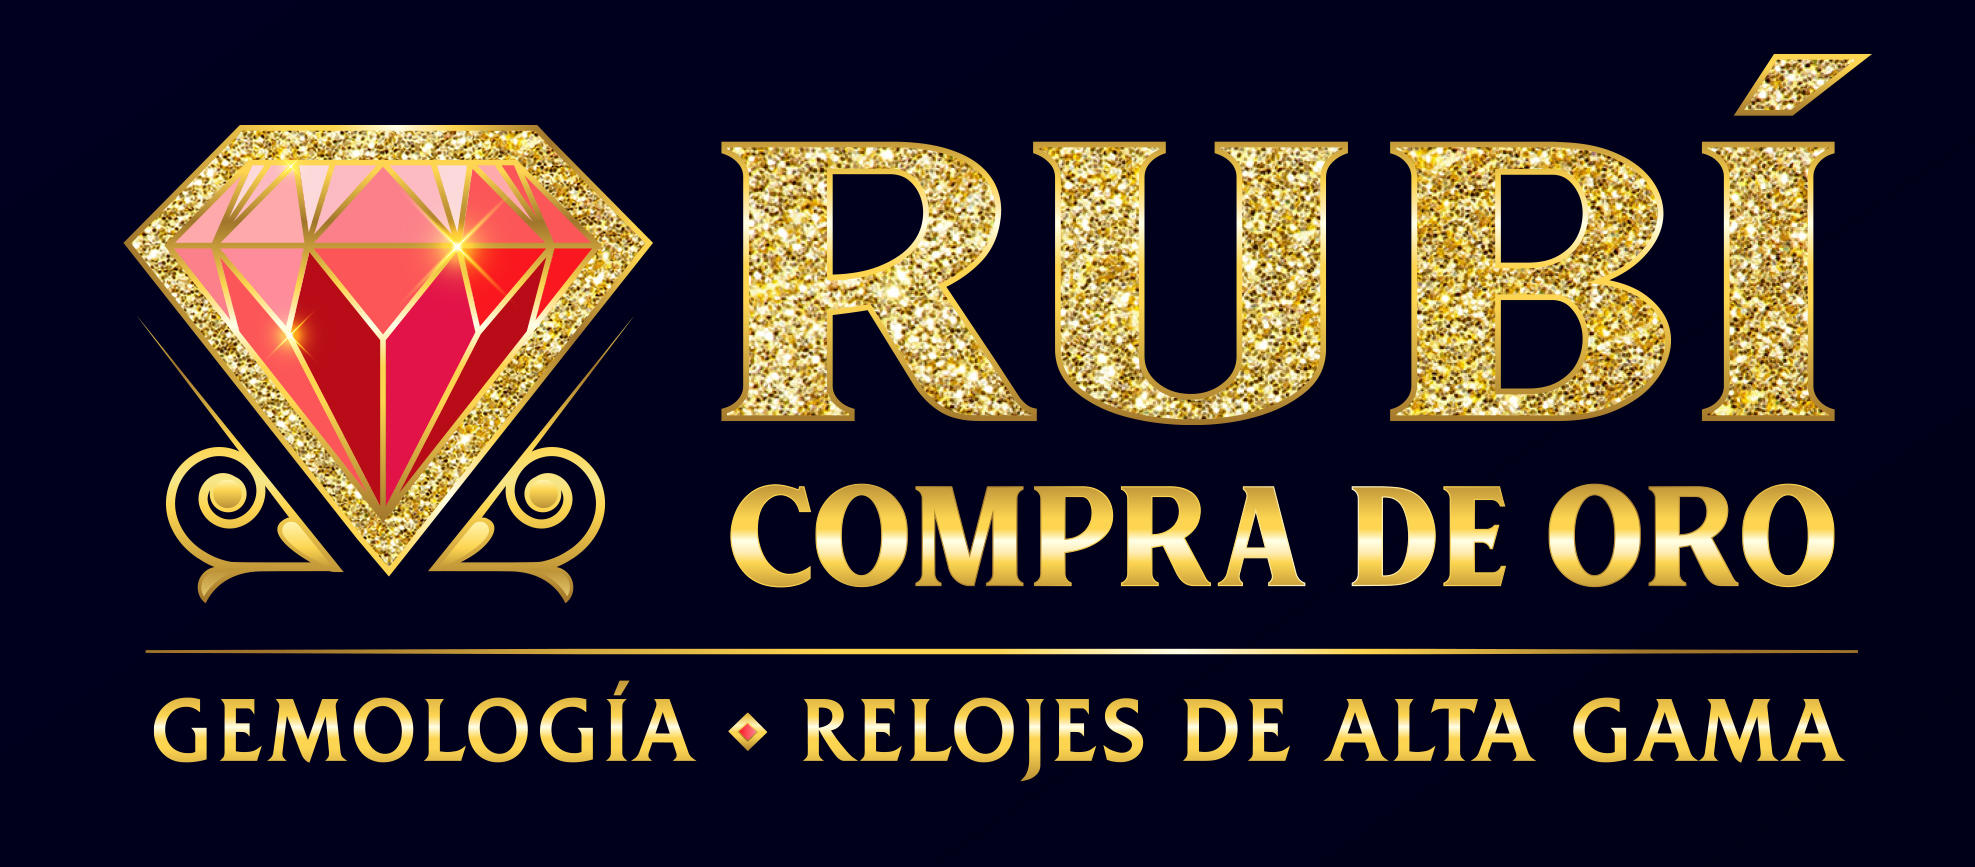 Images Compro Oro Joyería Rubí